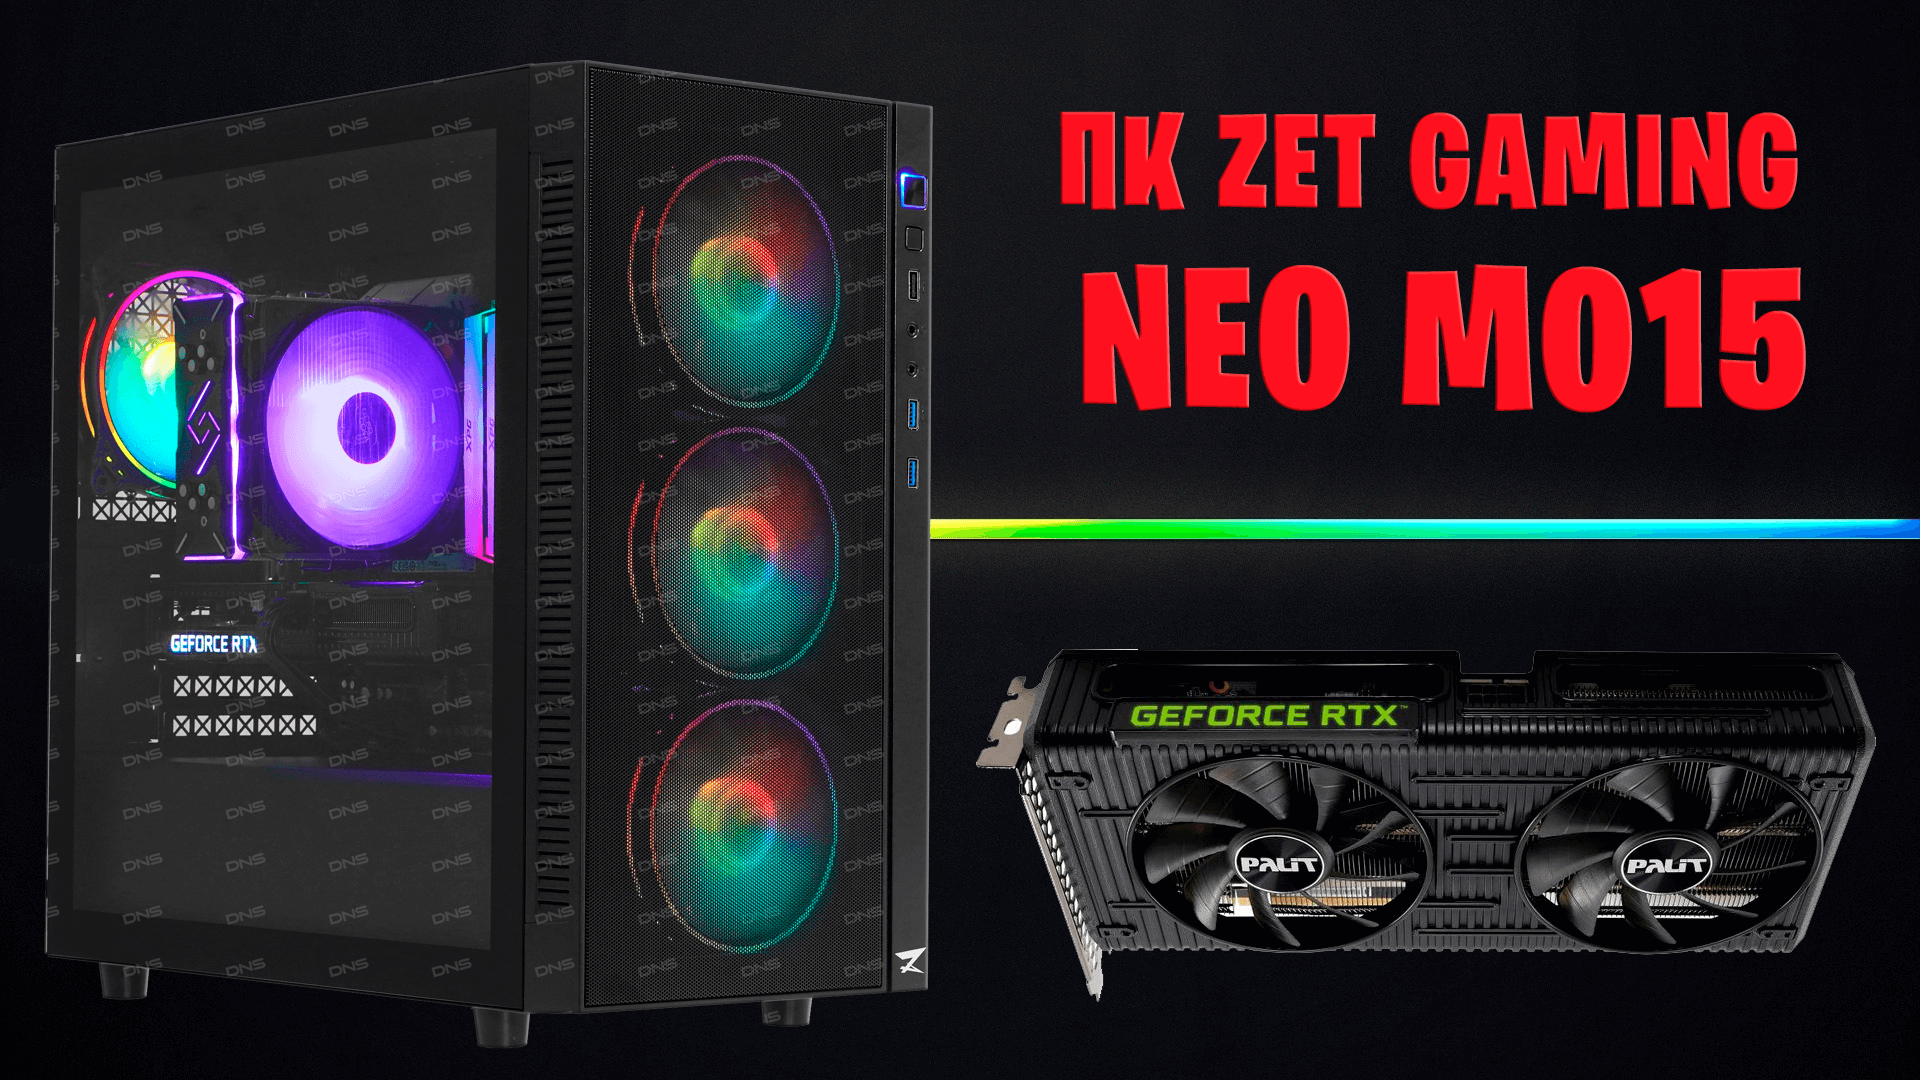 Zet gaming x. ПК zet Gaming Neo. ПК zet Gaming Neo m061. Zet Gaming Neo m006. Zet Gaming Neo m008.